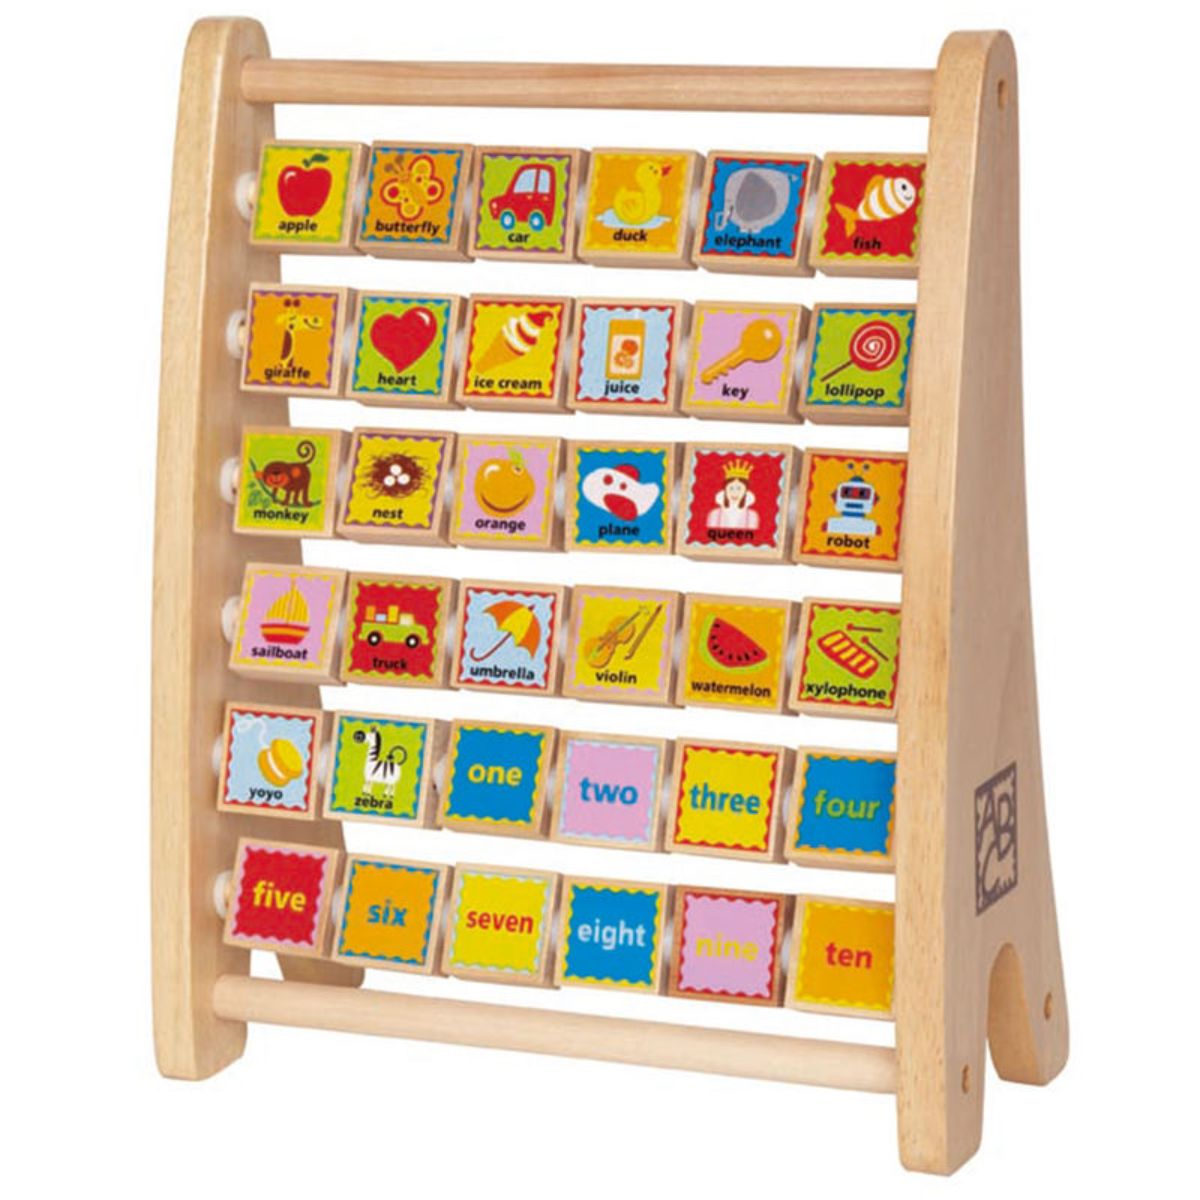 Comprar Mochilas infantiles - Abacus Online